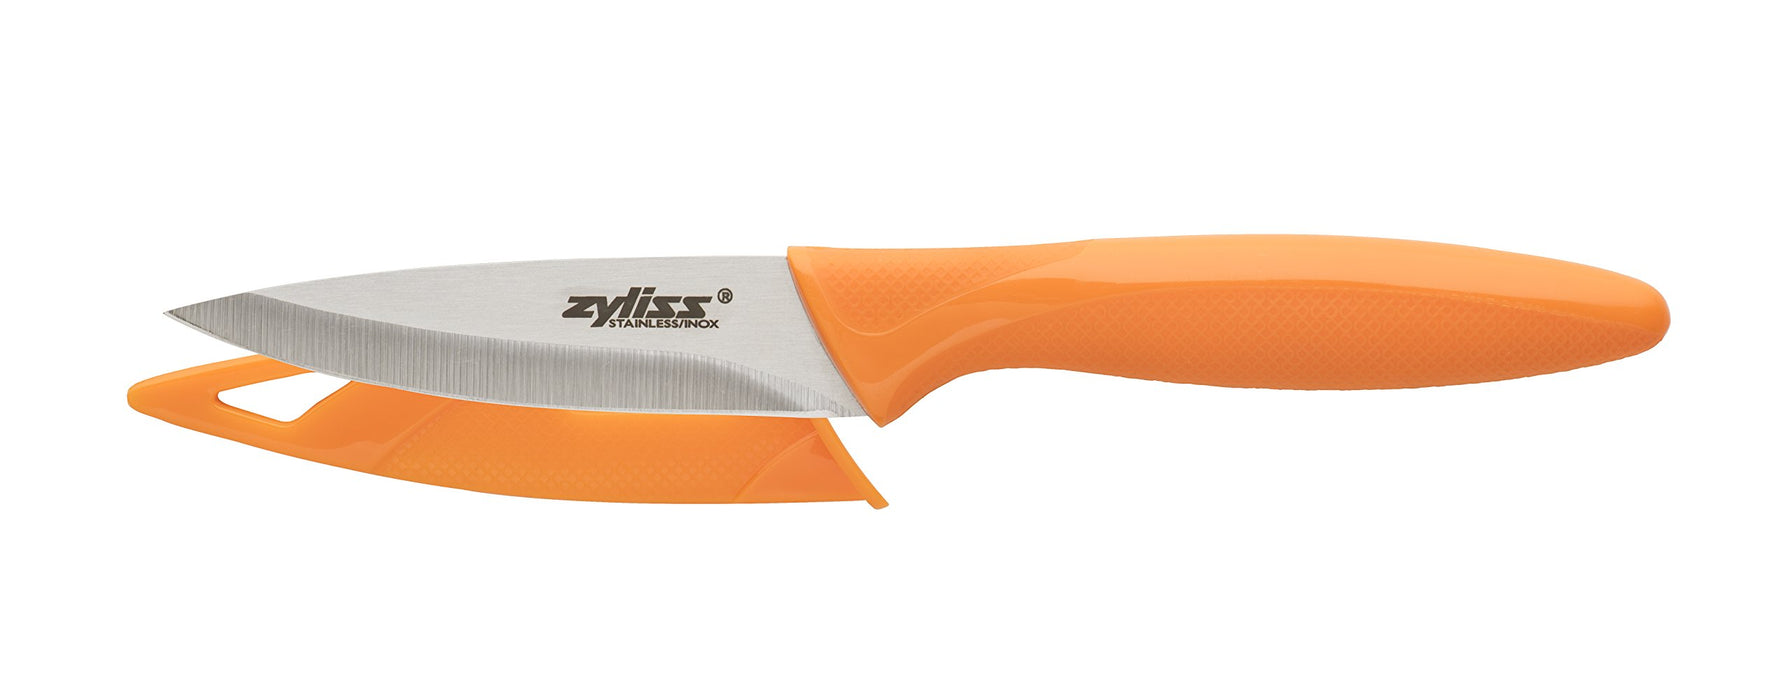 Zyliss Knife, Utility, 5.5 Inch